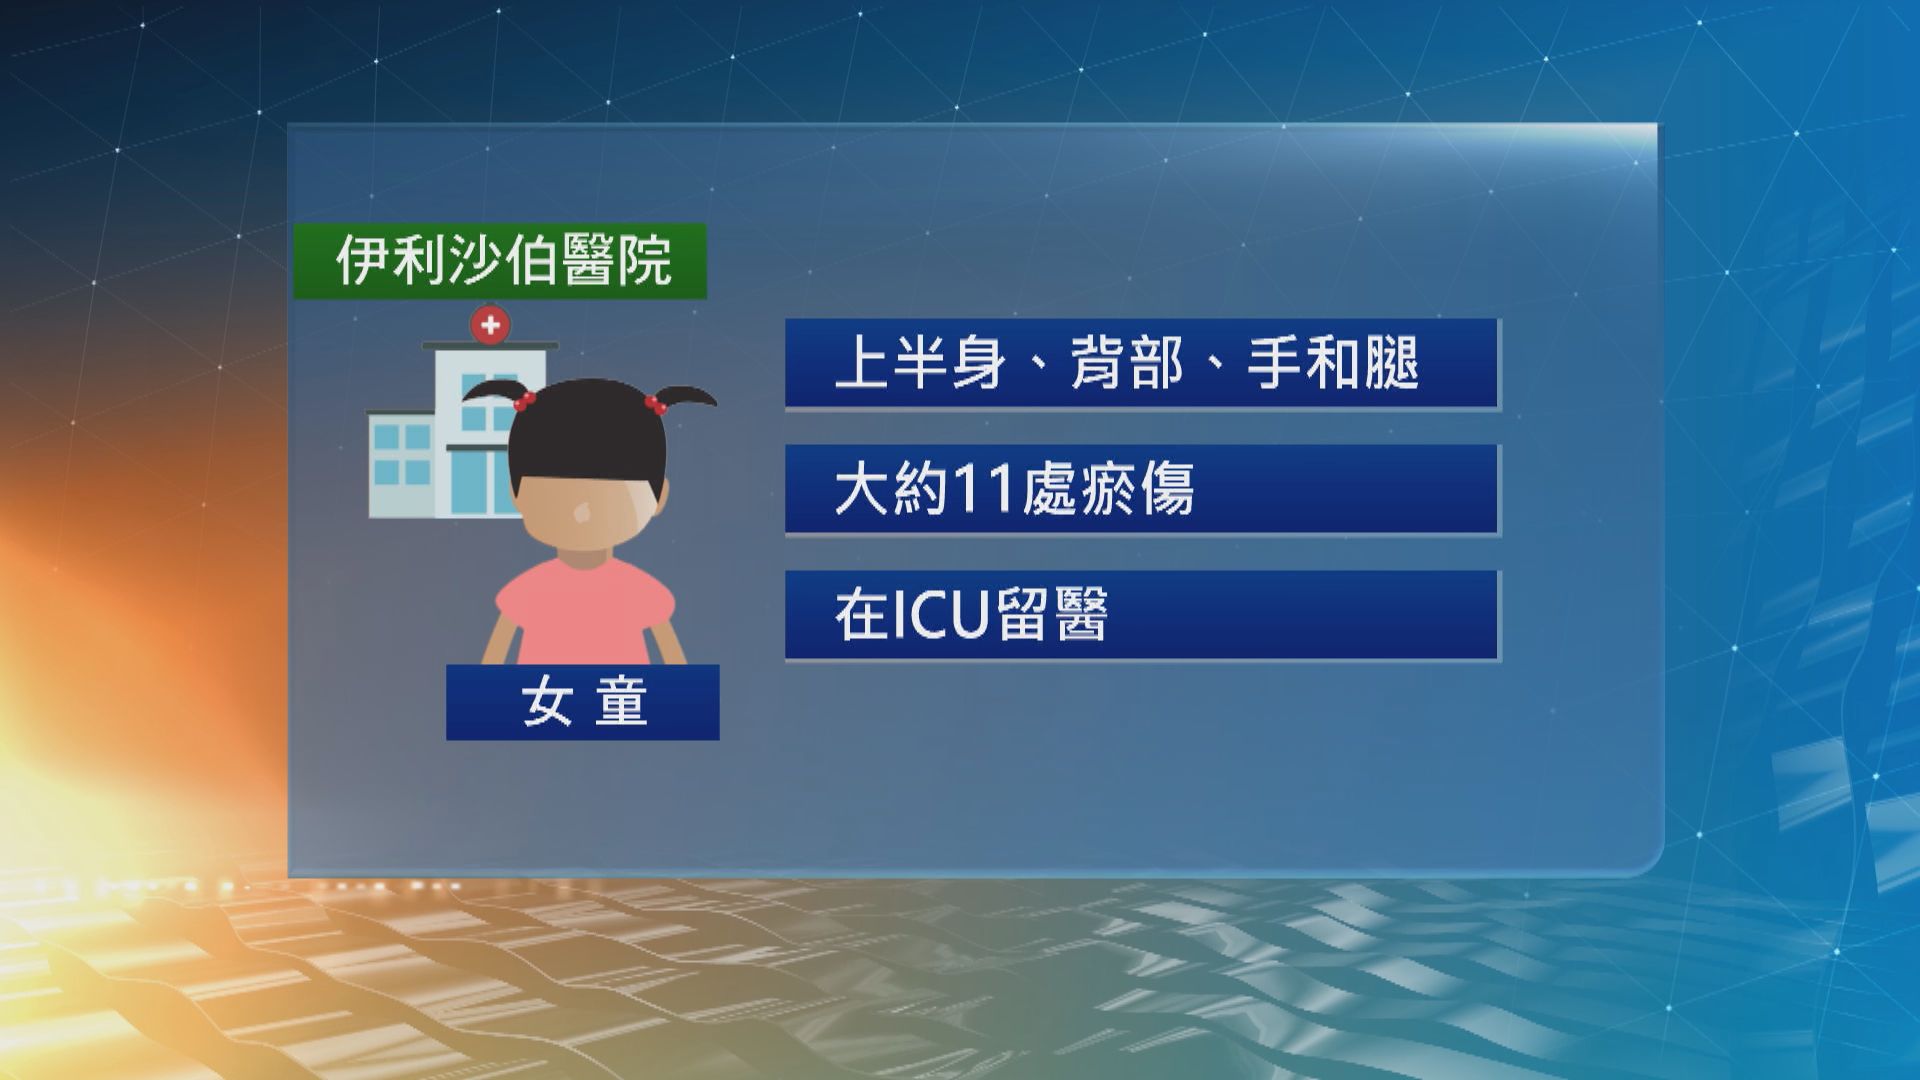 九龍城4歲女童昏迷 警拘其母涉虐兒